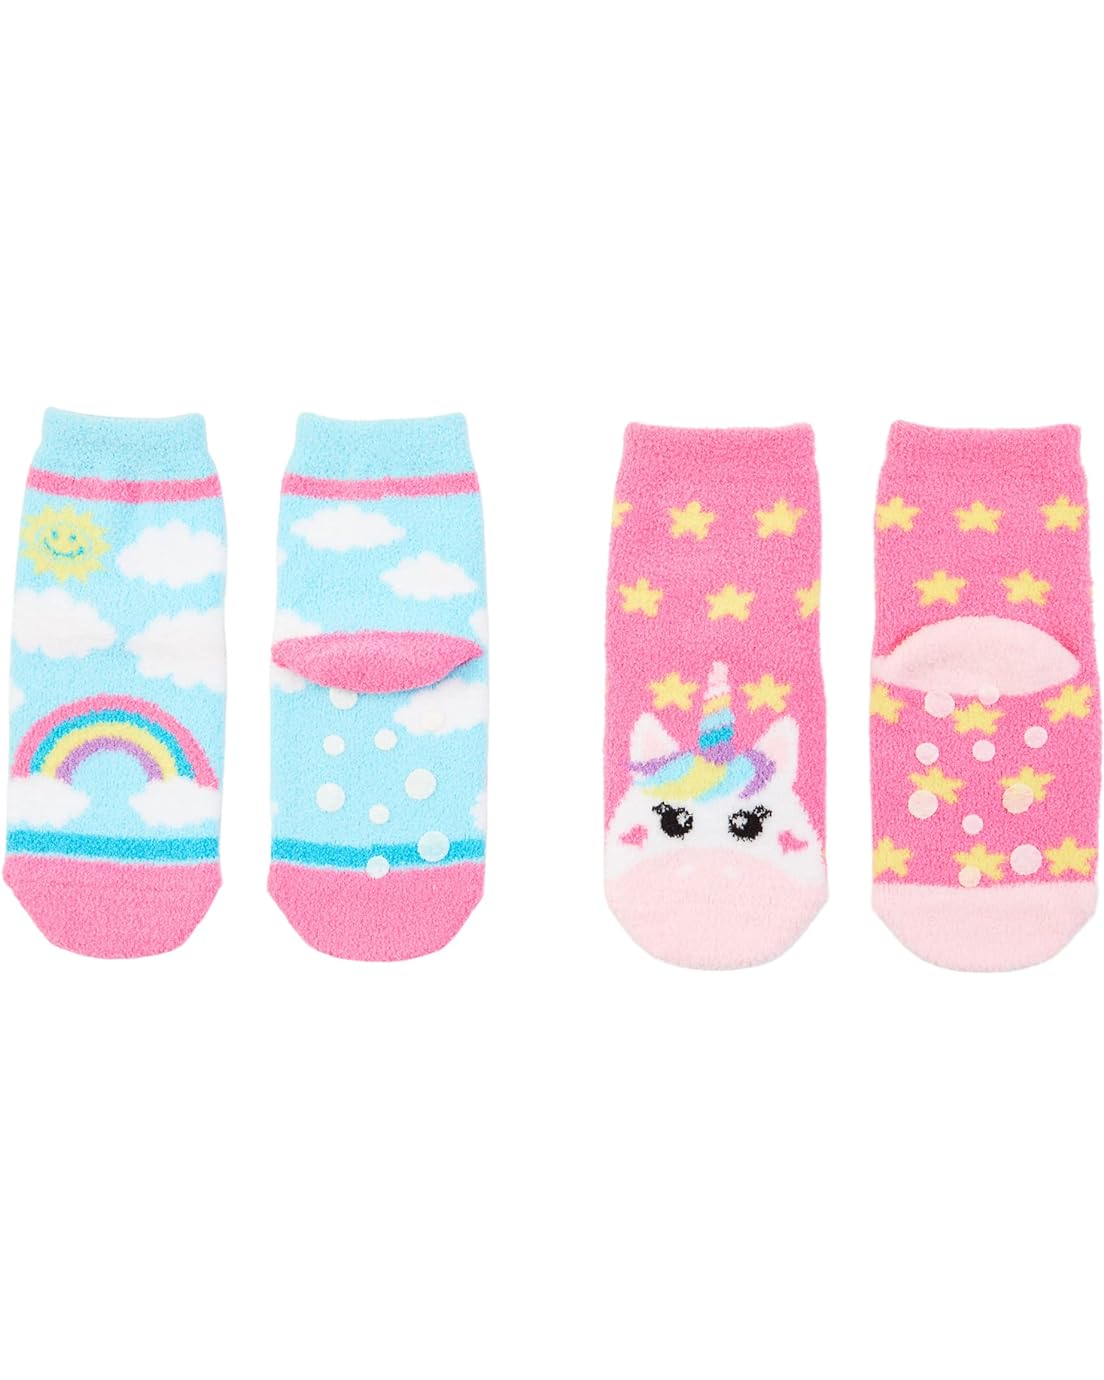 Jefferies Socks Unicorn & Rainbow Fuzzy Slipper Socks 2-Pack (Infant/Toddler/Little Kid/Big Kid)